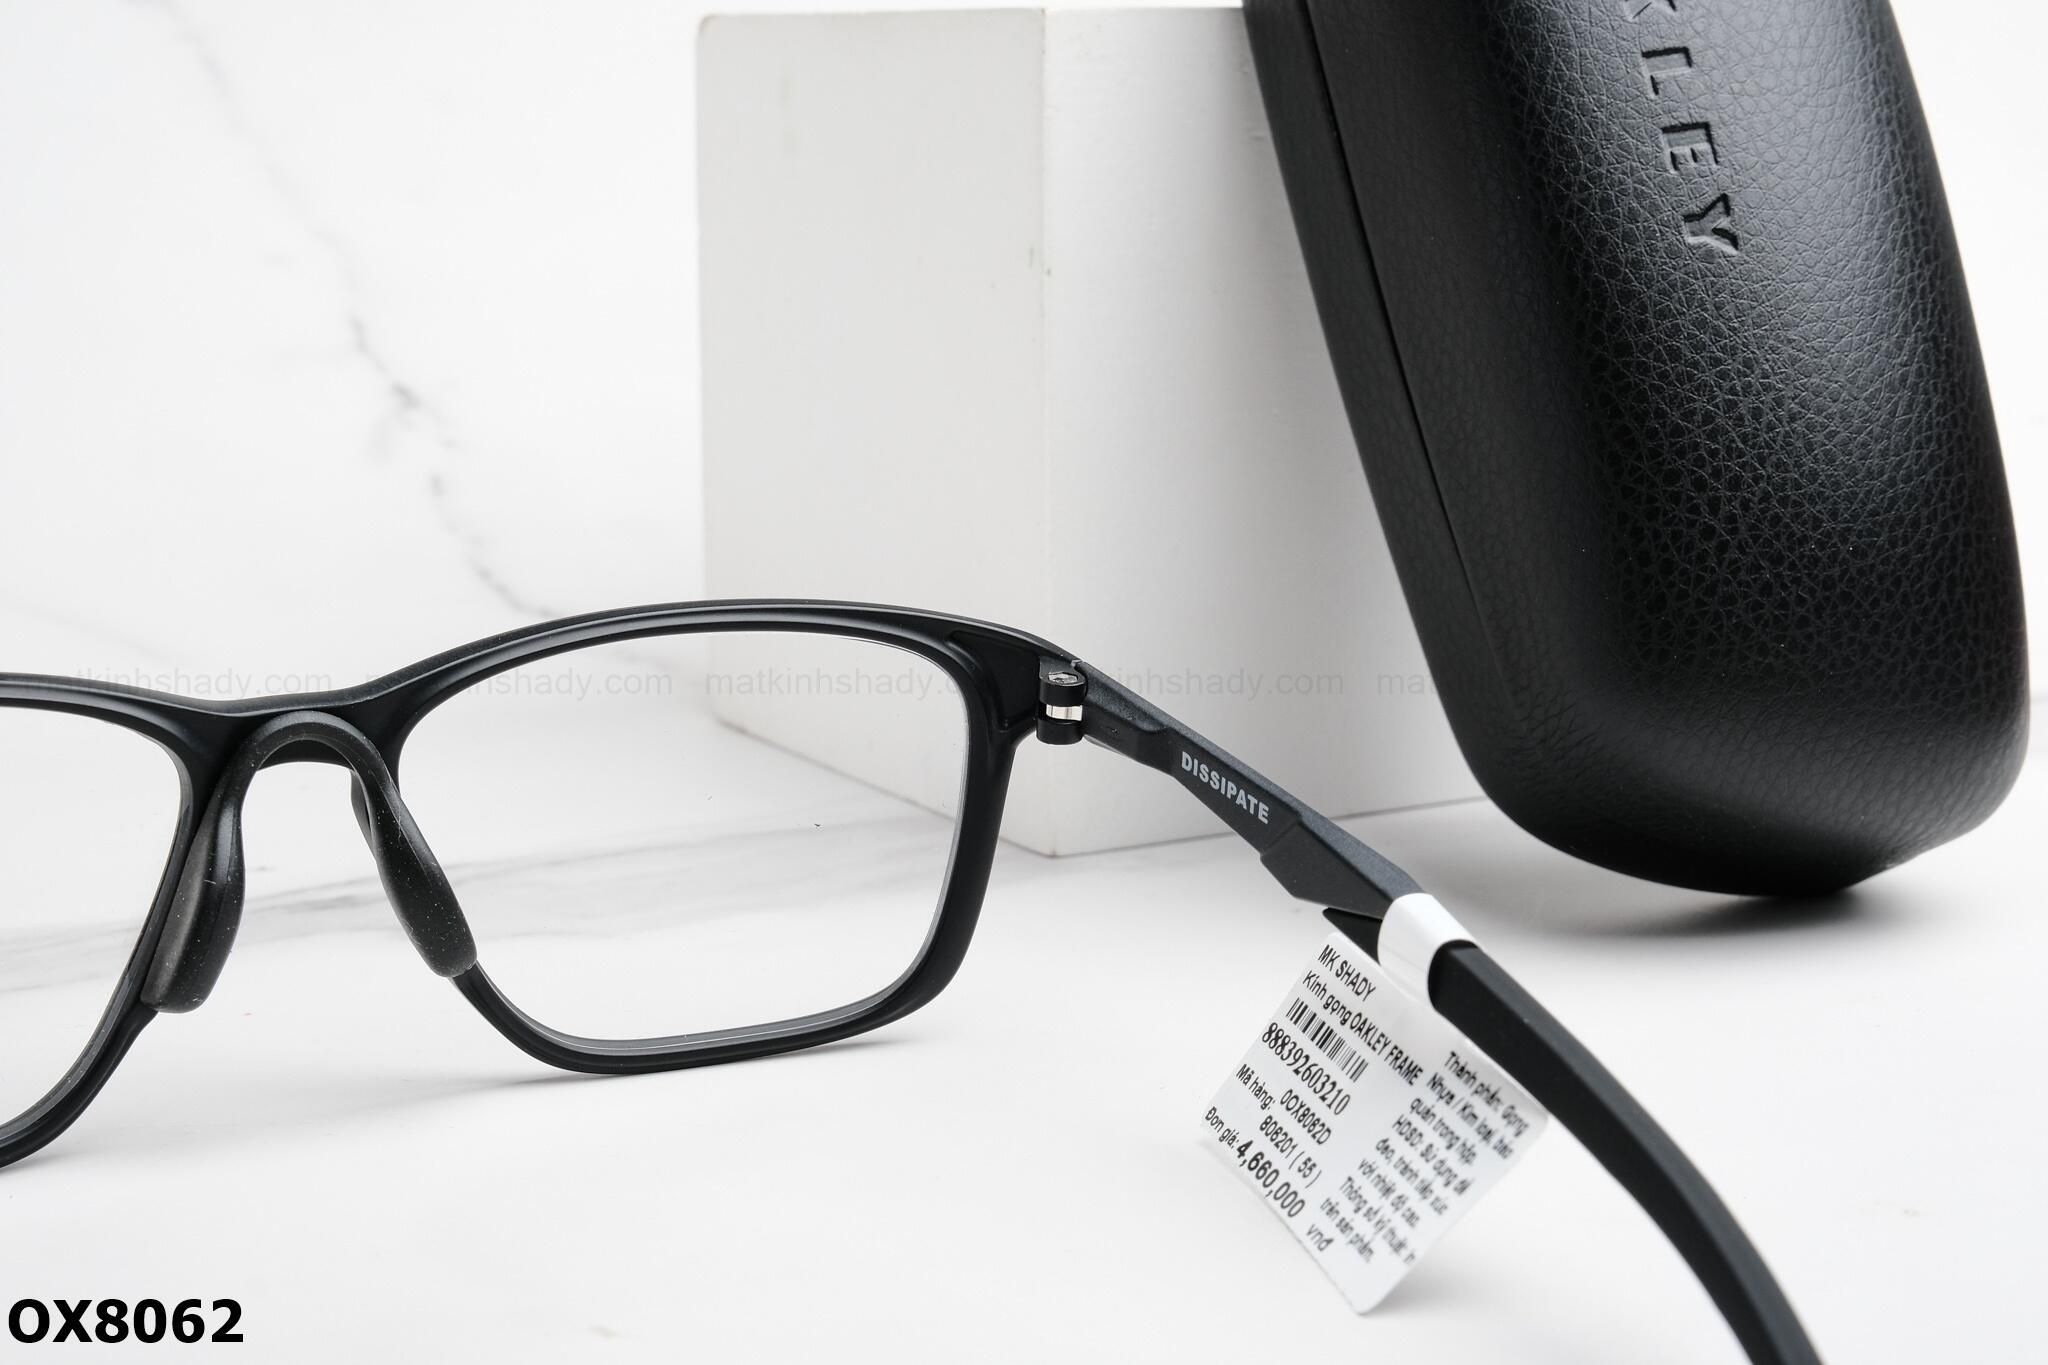  Oakley Eyewear - Glasses - OX8062 